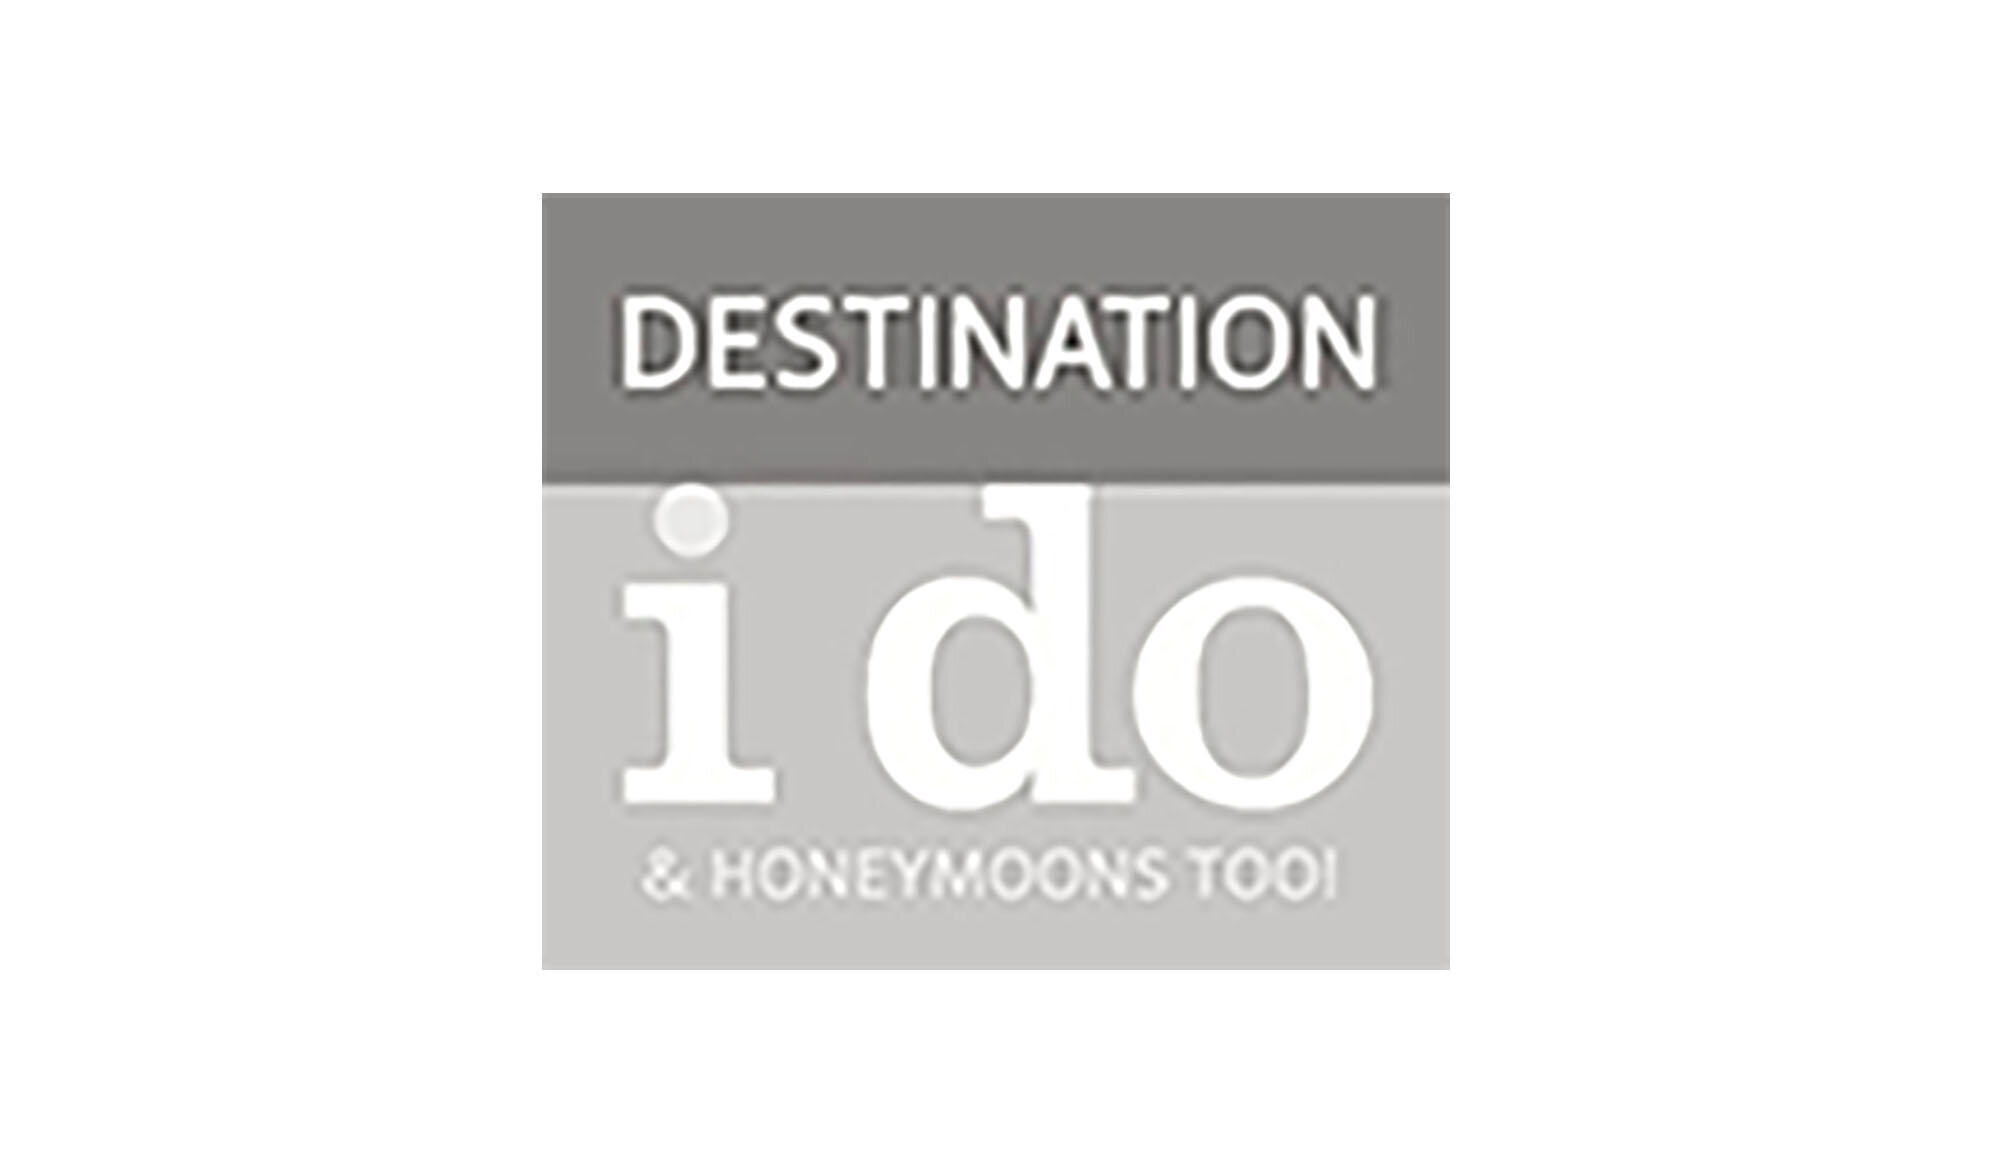 destination-i-do-logo-258x150.jpg